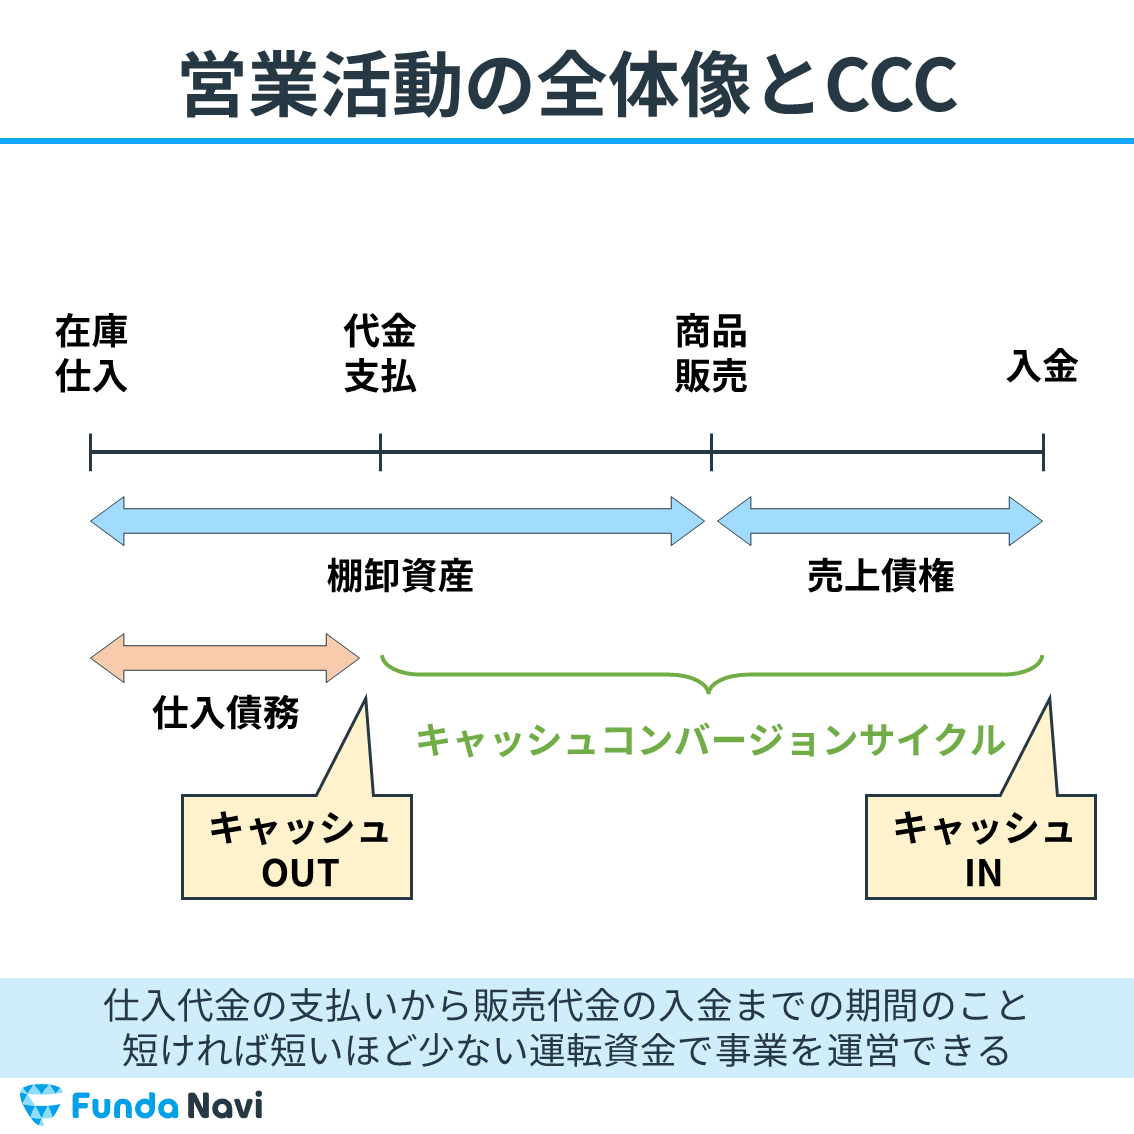 キャッシュコンバージョンサイクル（CCC）の全体像